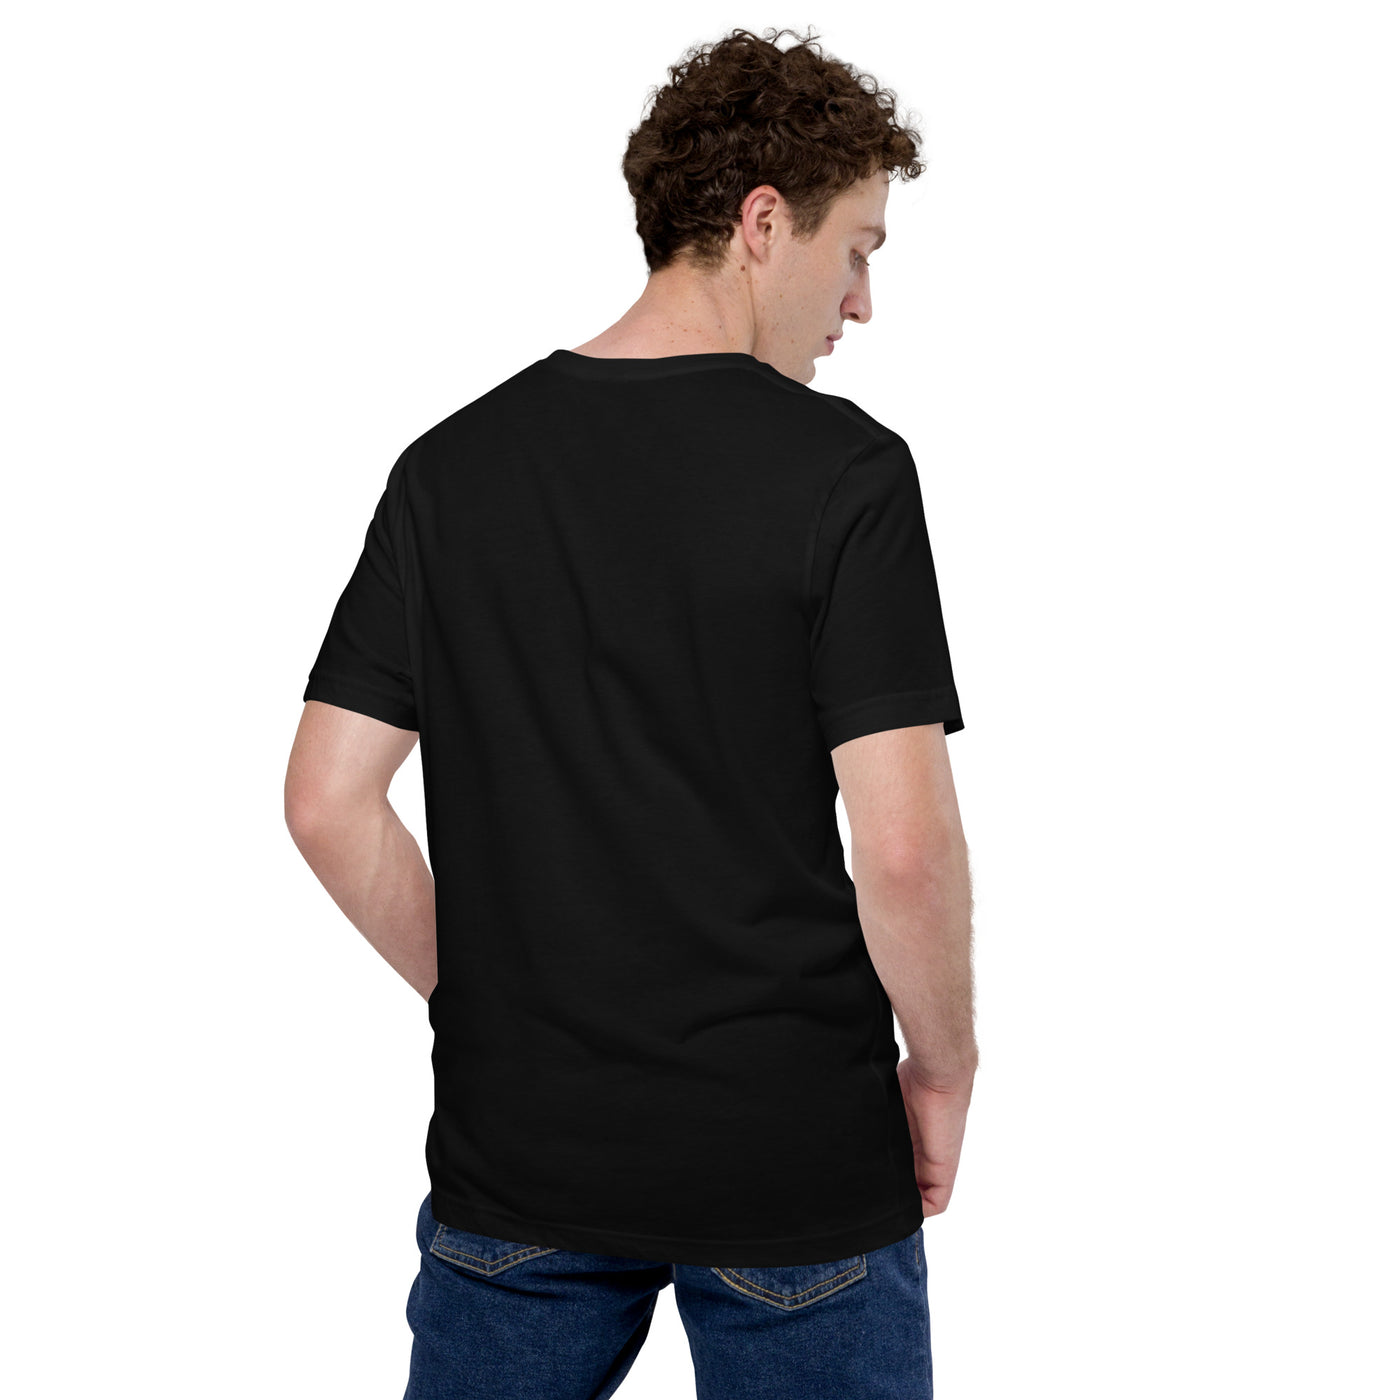 Only Vector V1 - Unisex t-shirt